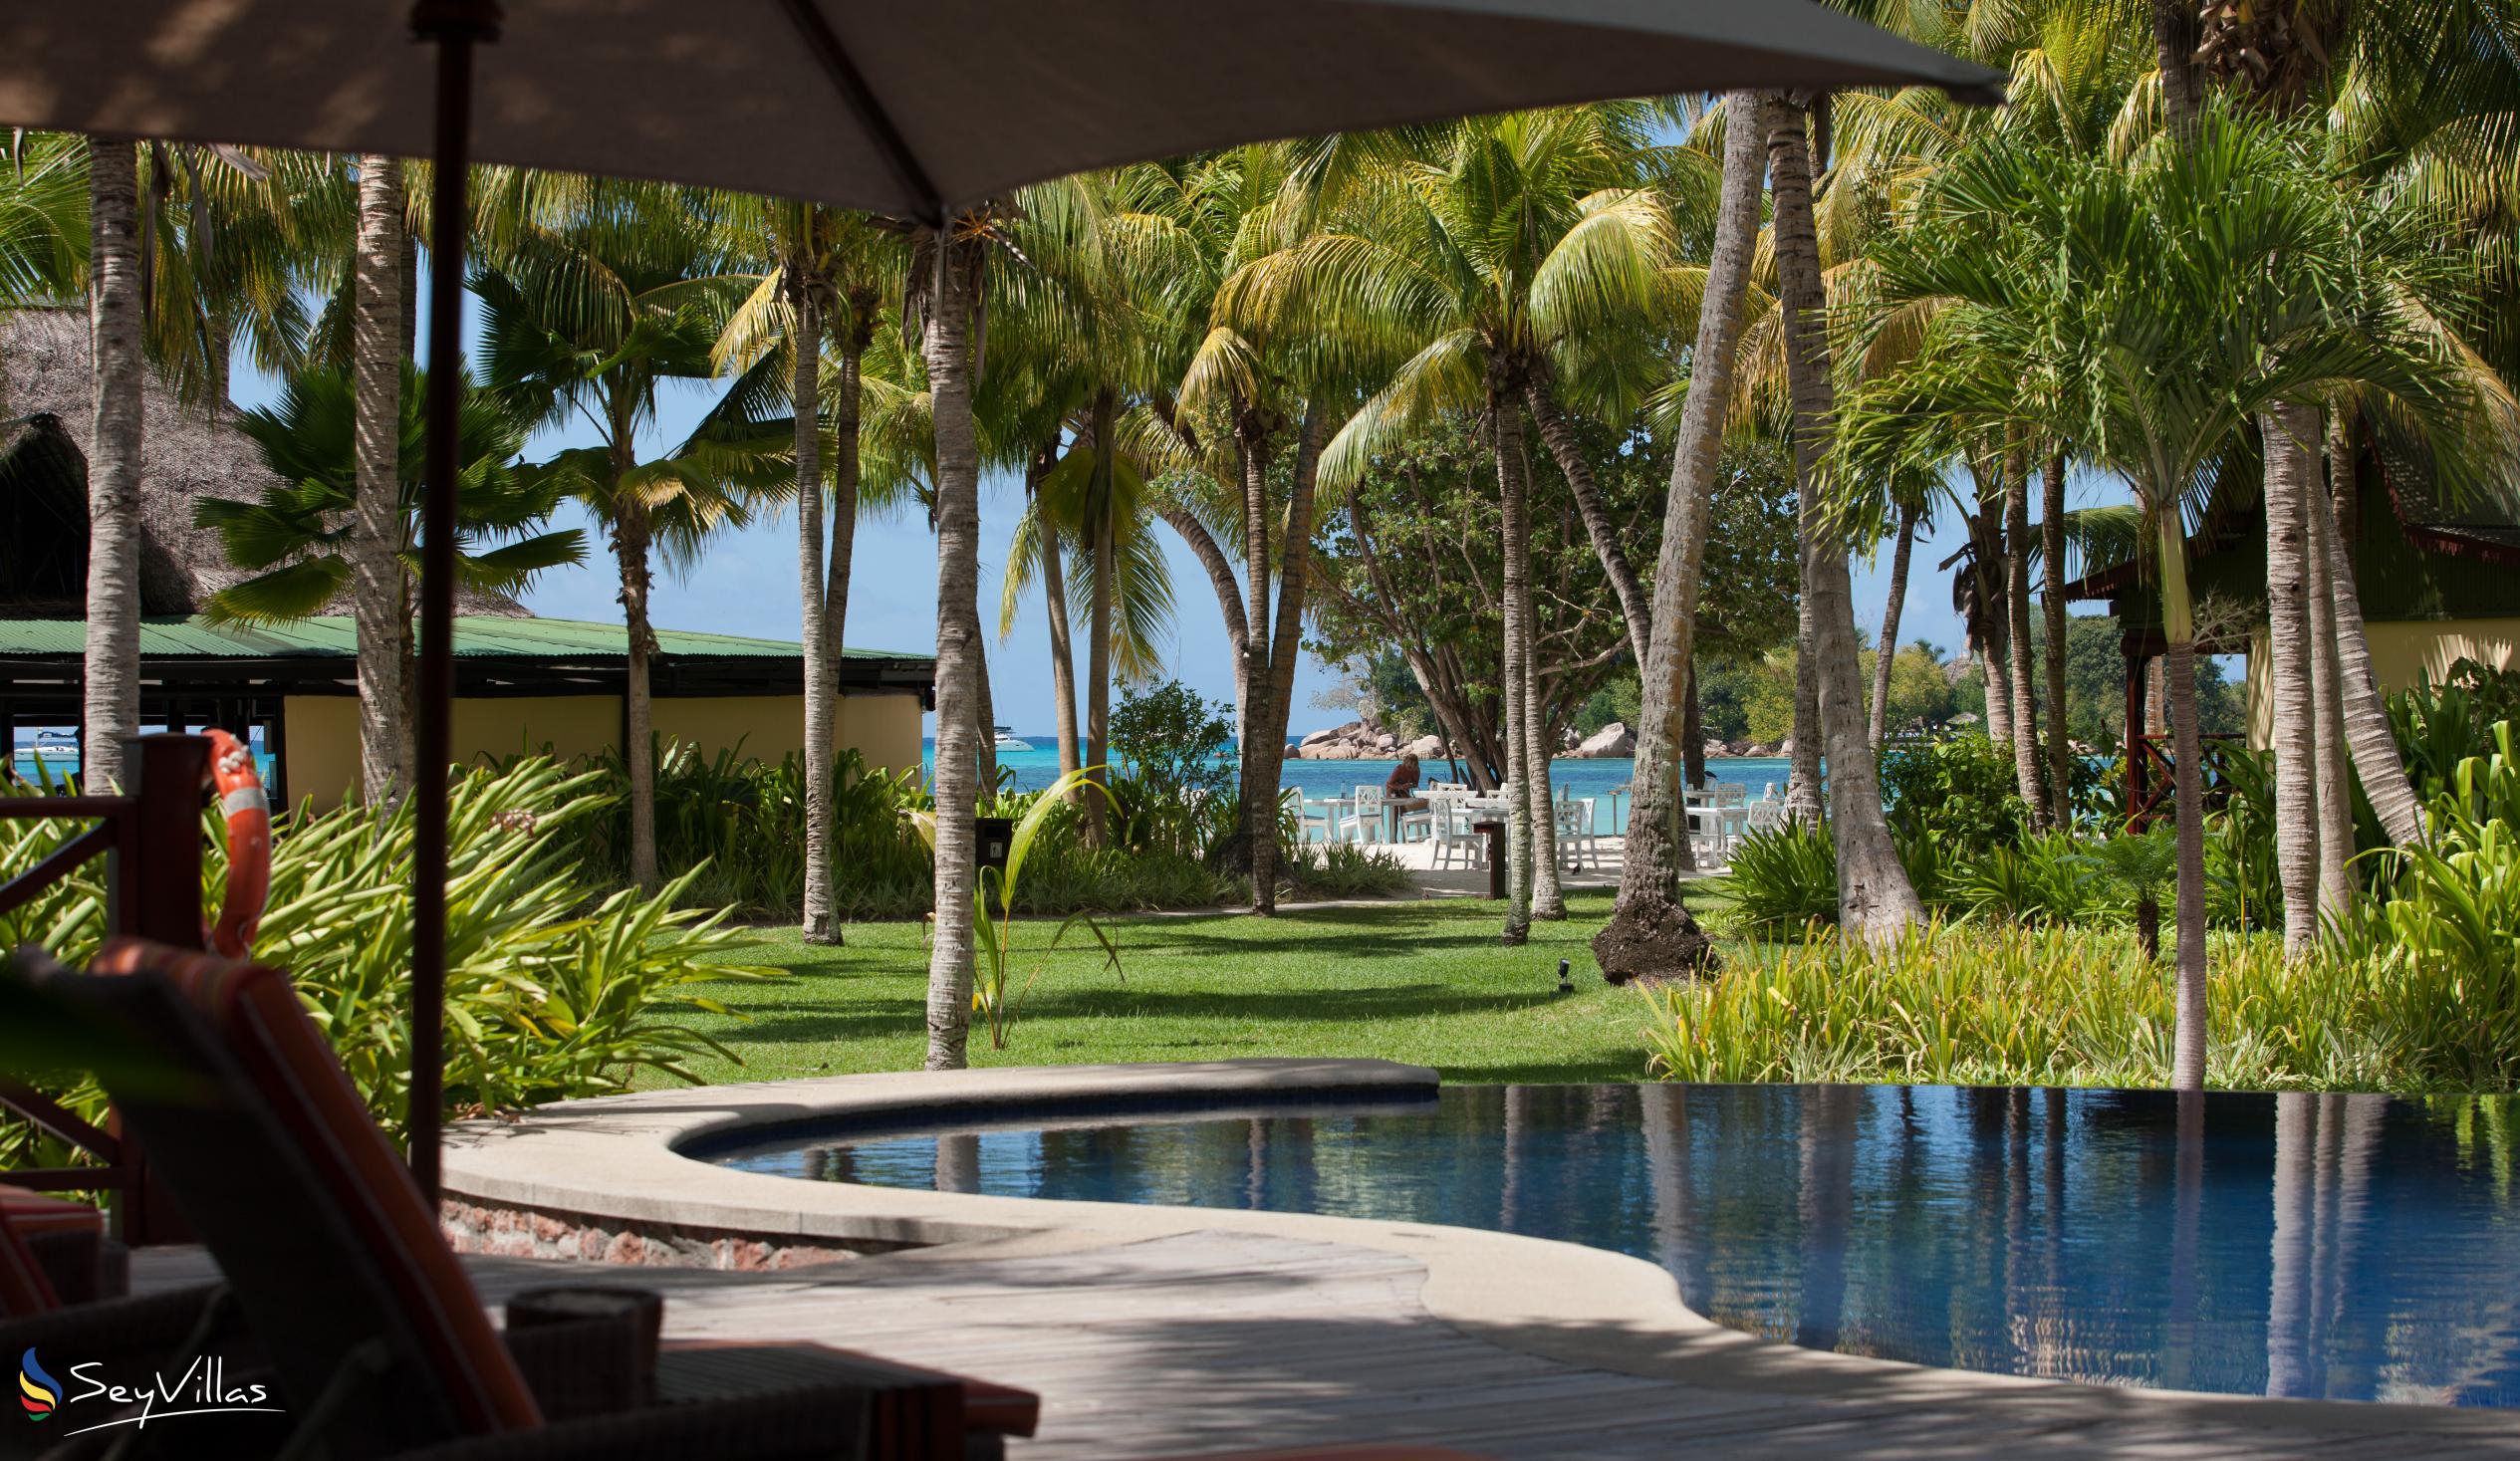 Foto 21: Paradise Sun Hotel - Aussenbereich - Praslin (Seychellen)